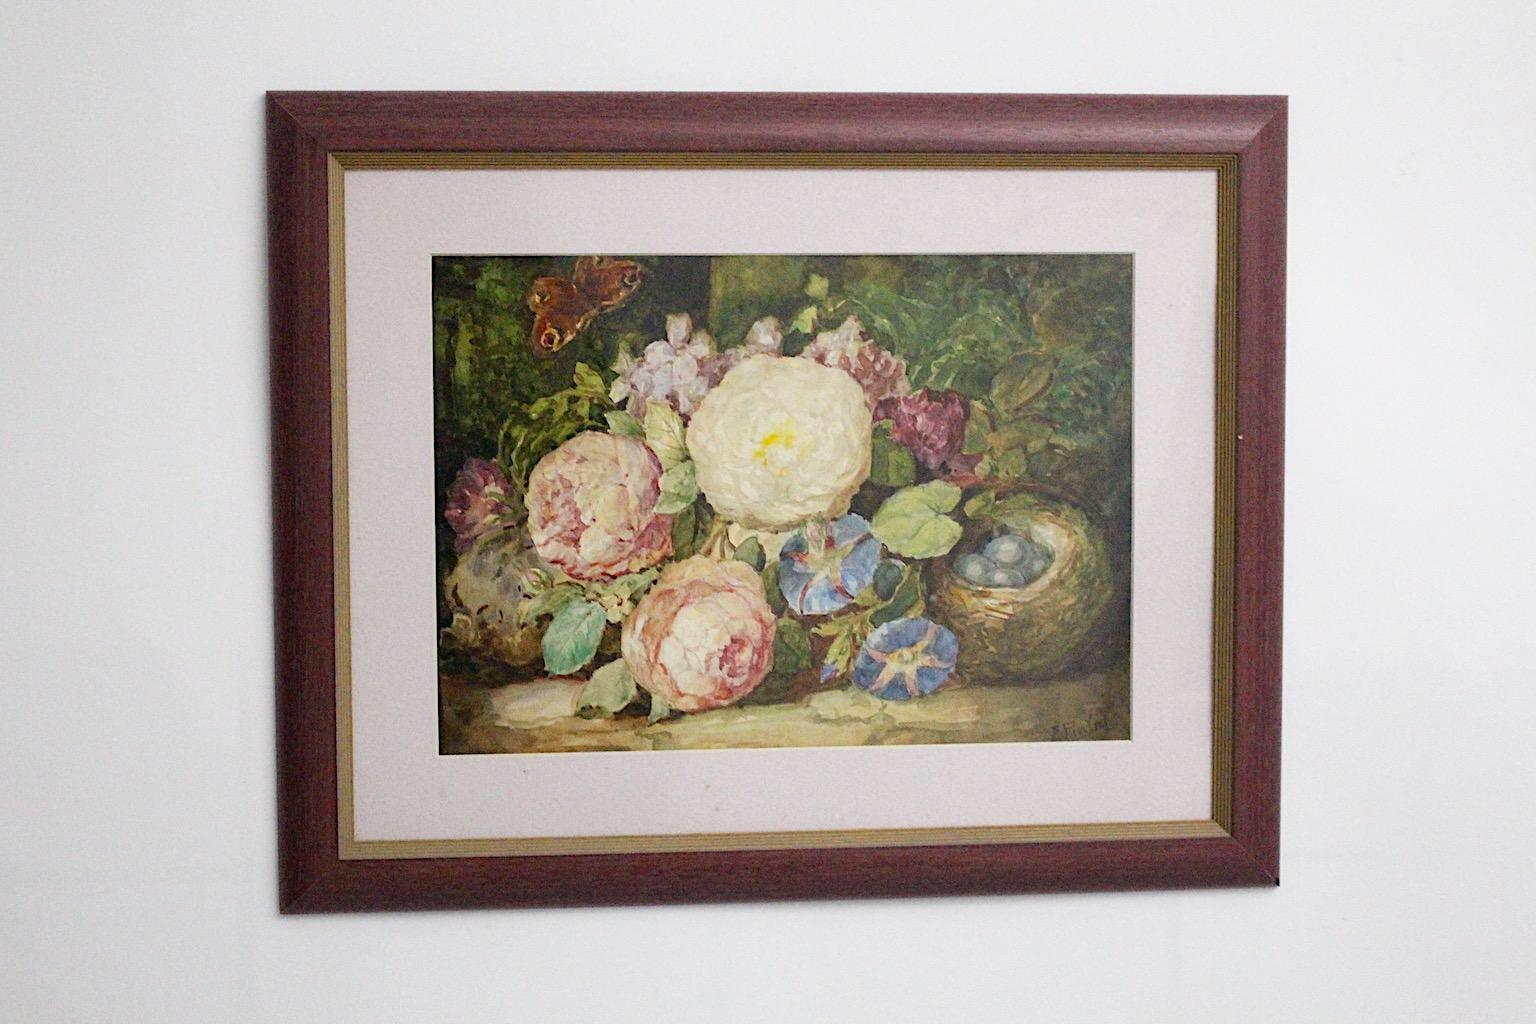 Peinture Art Déco aquarelle sur carton avec passe-partout sous verre encadrée, par Emil Fiala, montre l'étonnante scène de nature morte avec fleurs et papillon dans des couleurs aux tons pastels.
Emil Fiala (1869 - 1960) a été membre du